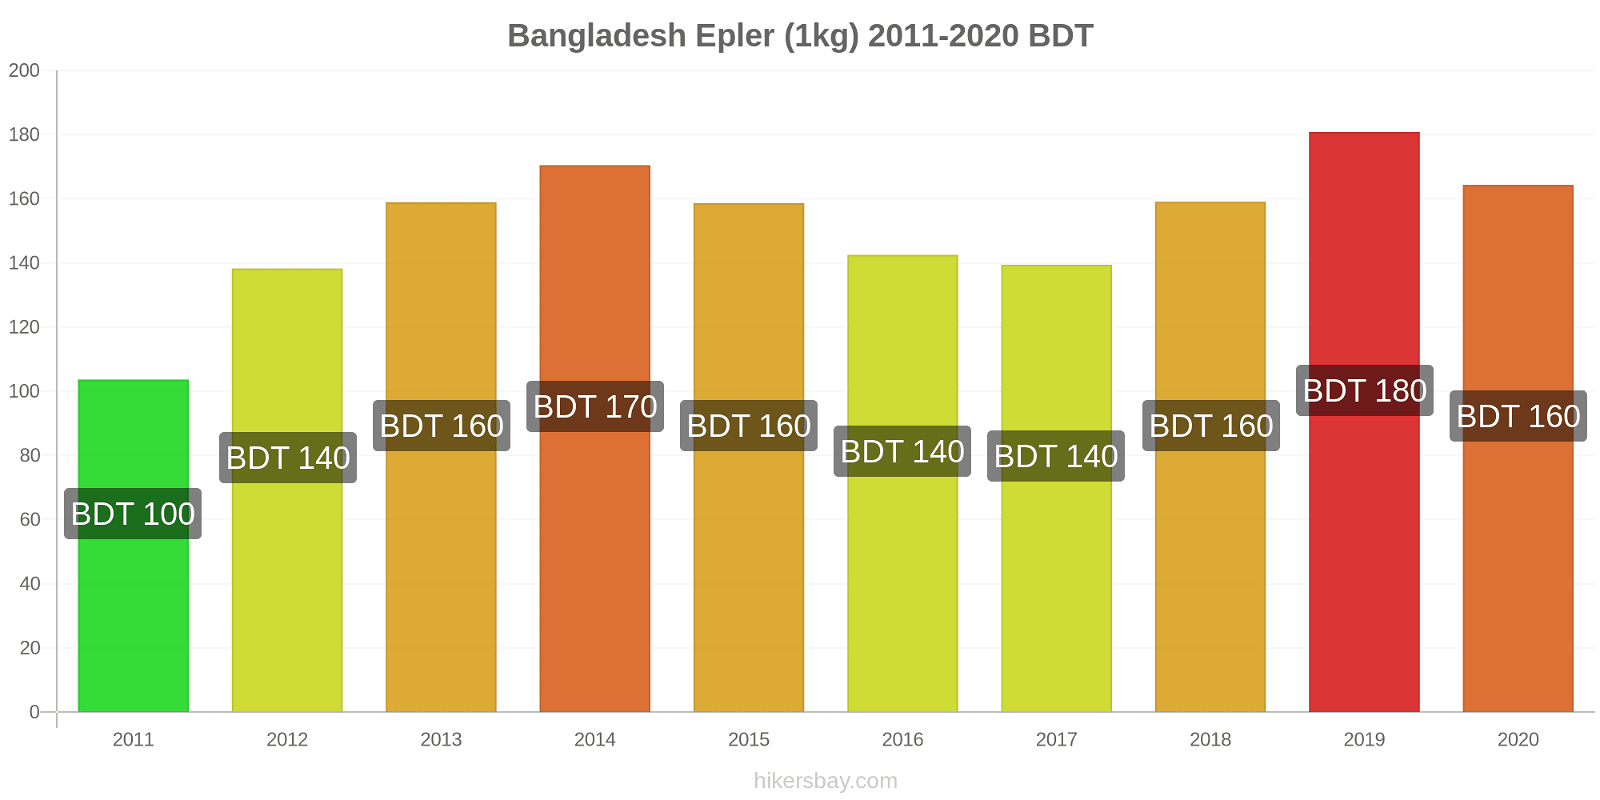 Bangladesh prisendringer Epler (1kg) hikersbay.com